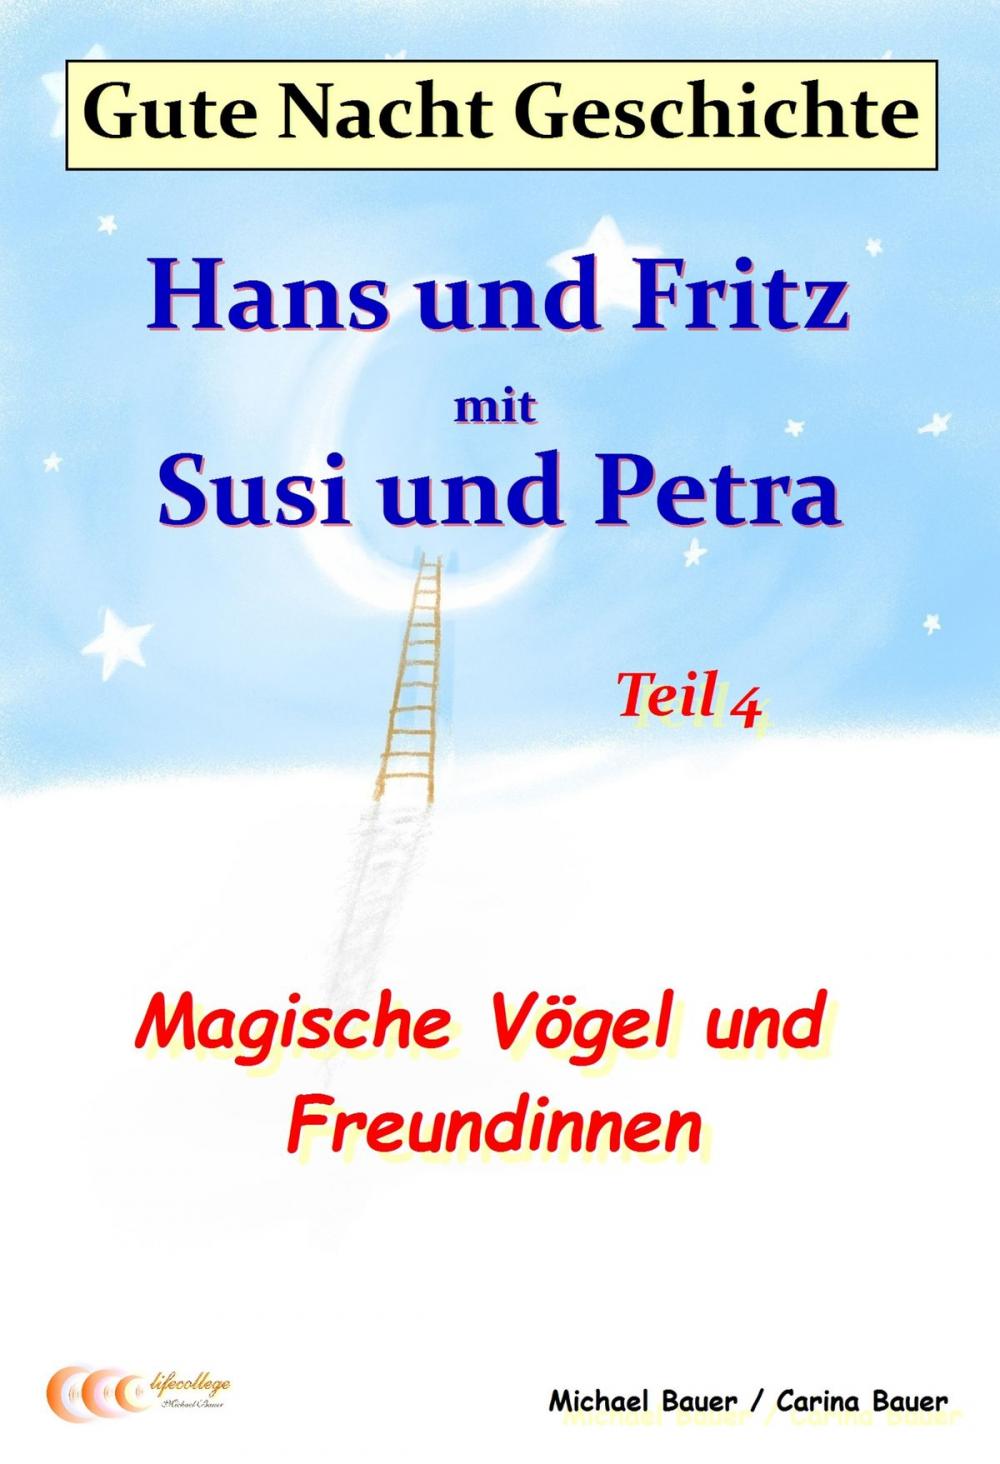 Big bigCover of Gute-Nacht-Geschichte: Hans und Fritz mit Susi und Petra - Magische Vögel und Freundinnen